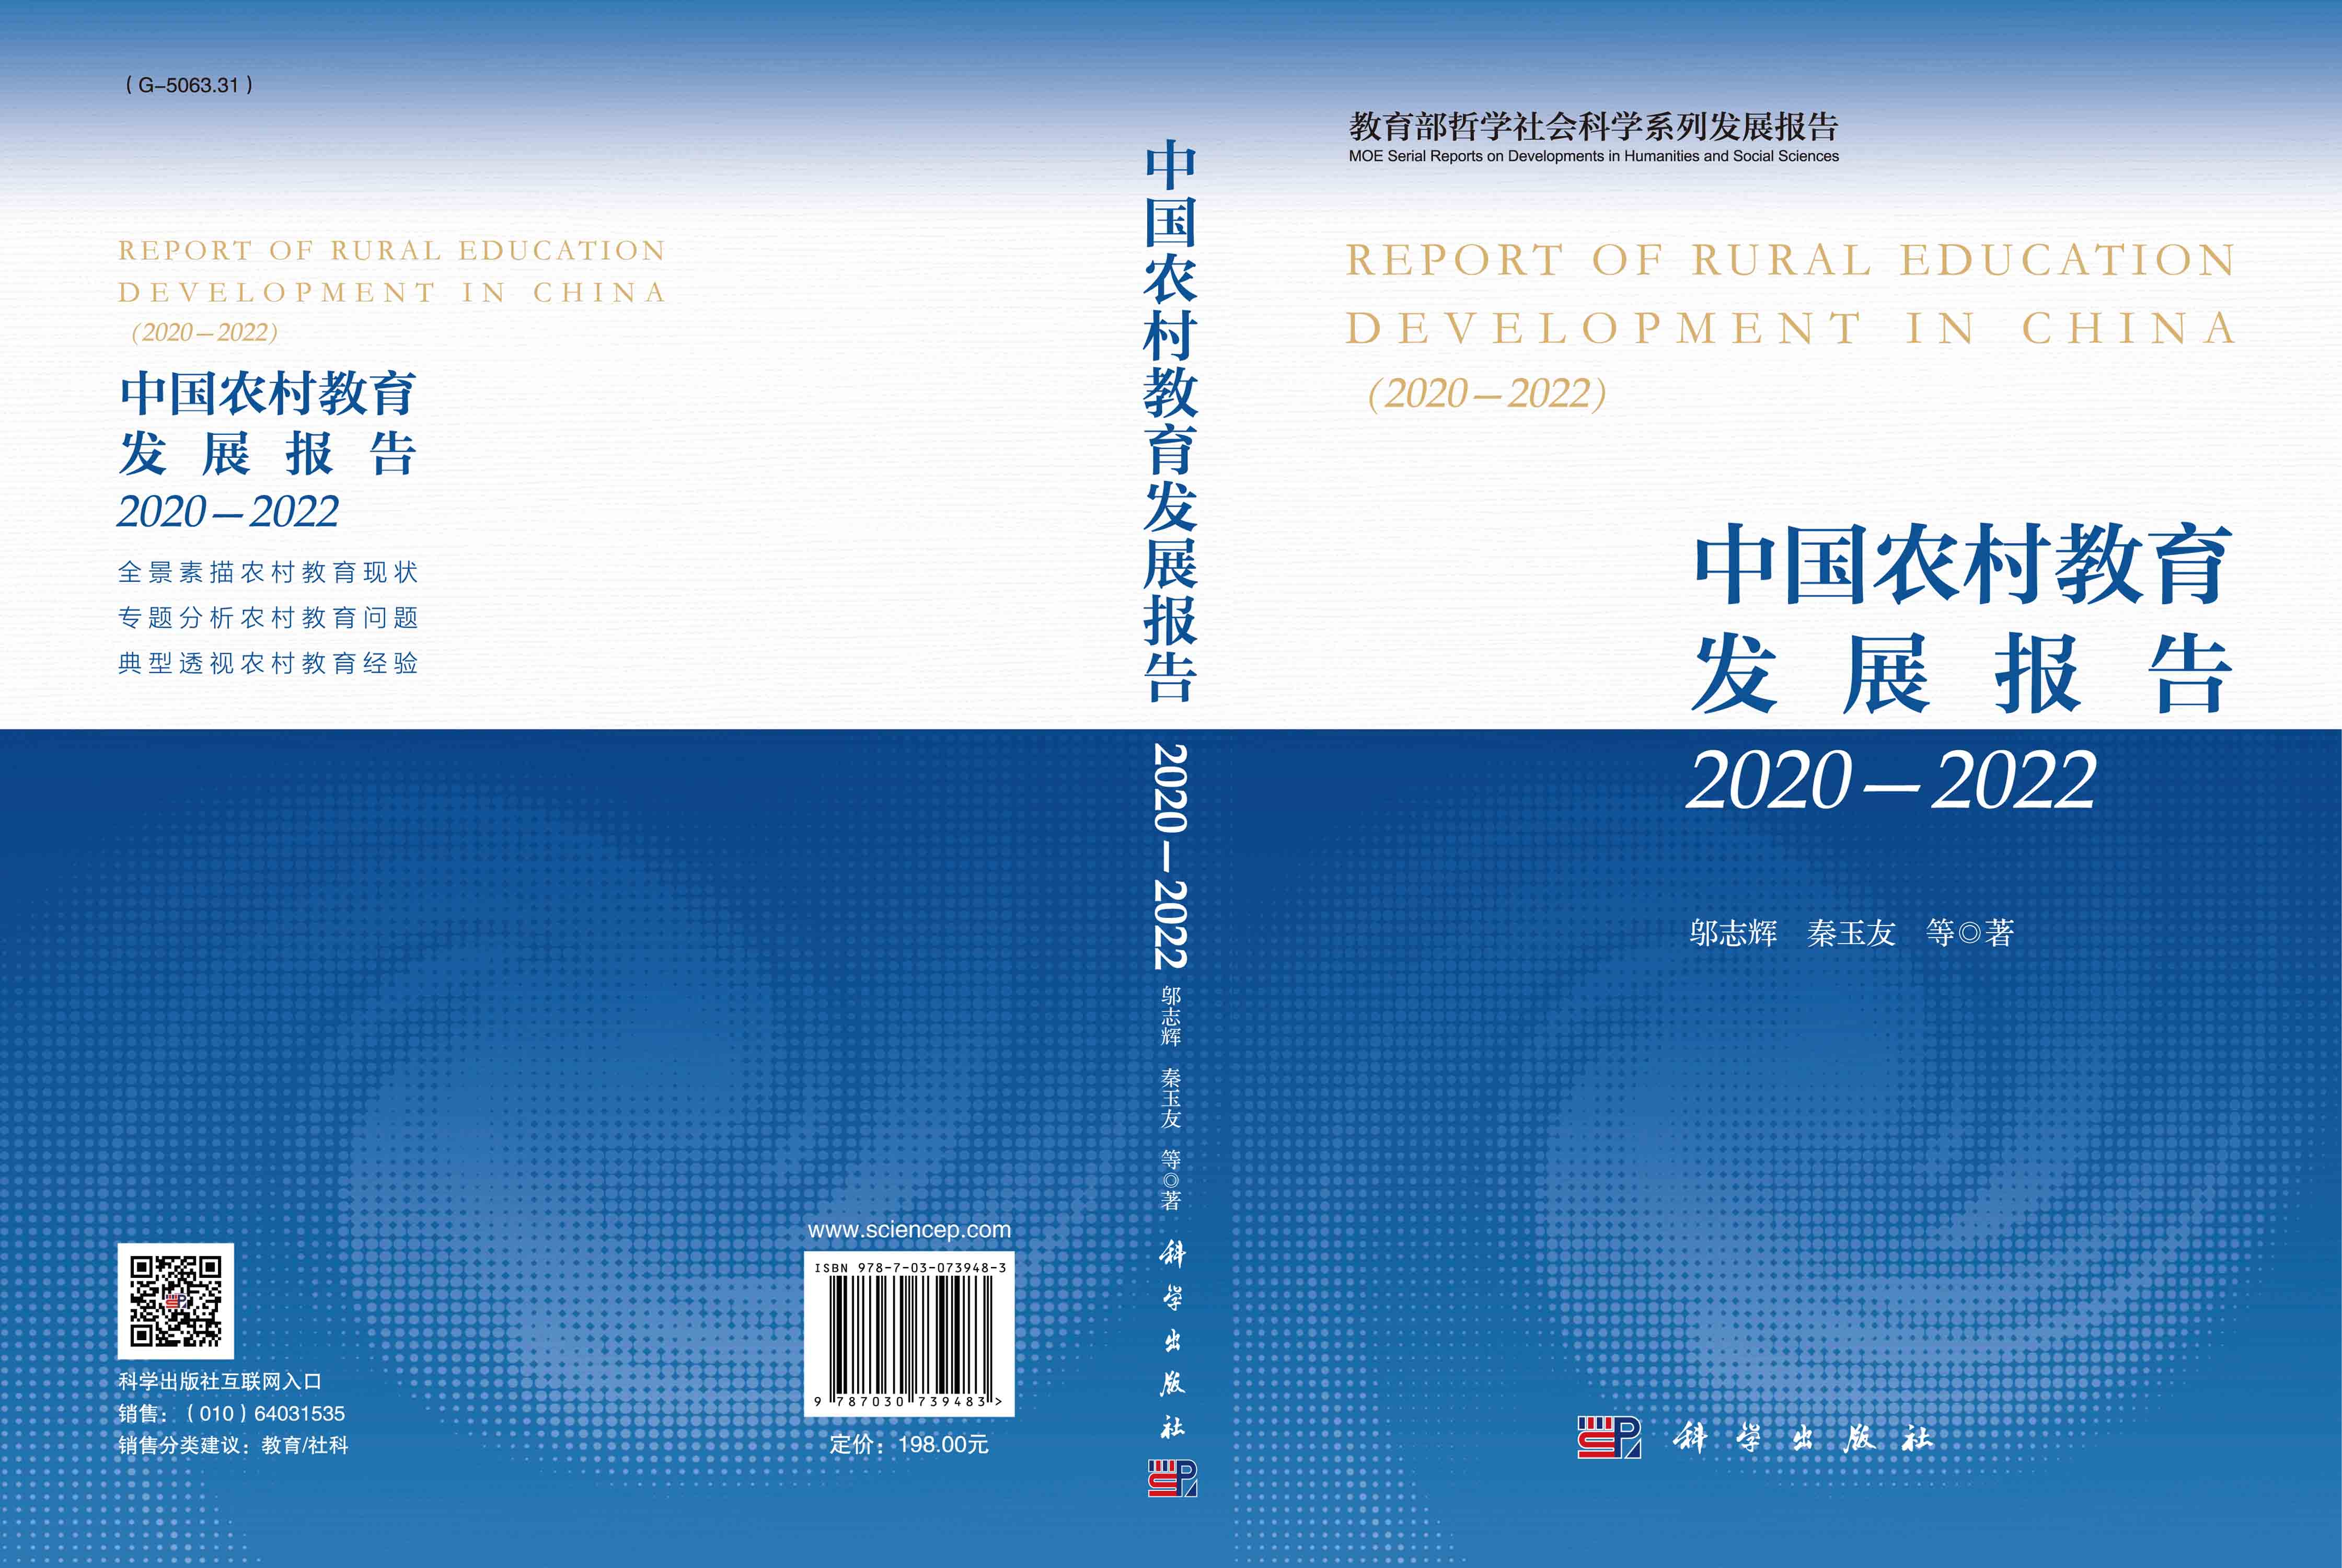 中国农村教育发展报告2020—2022